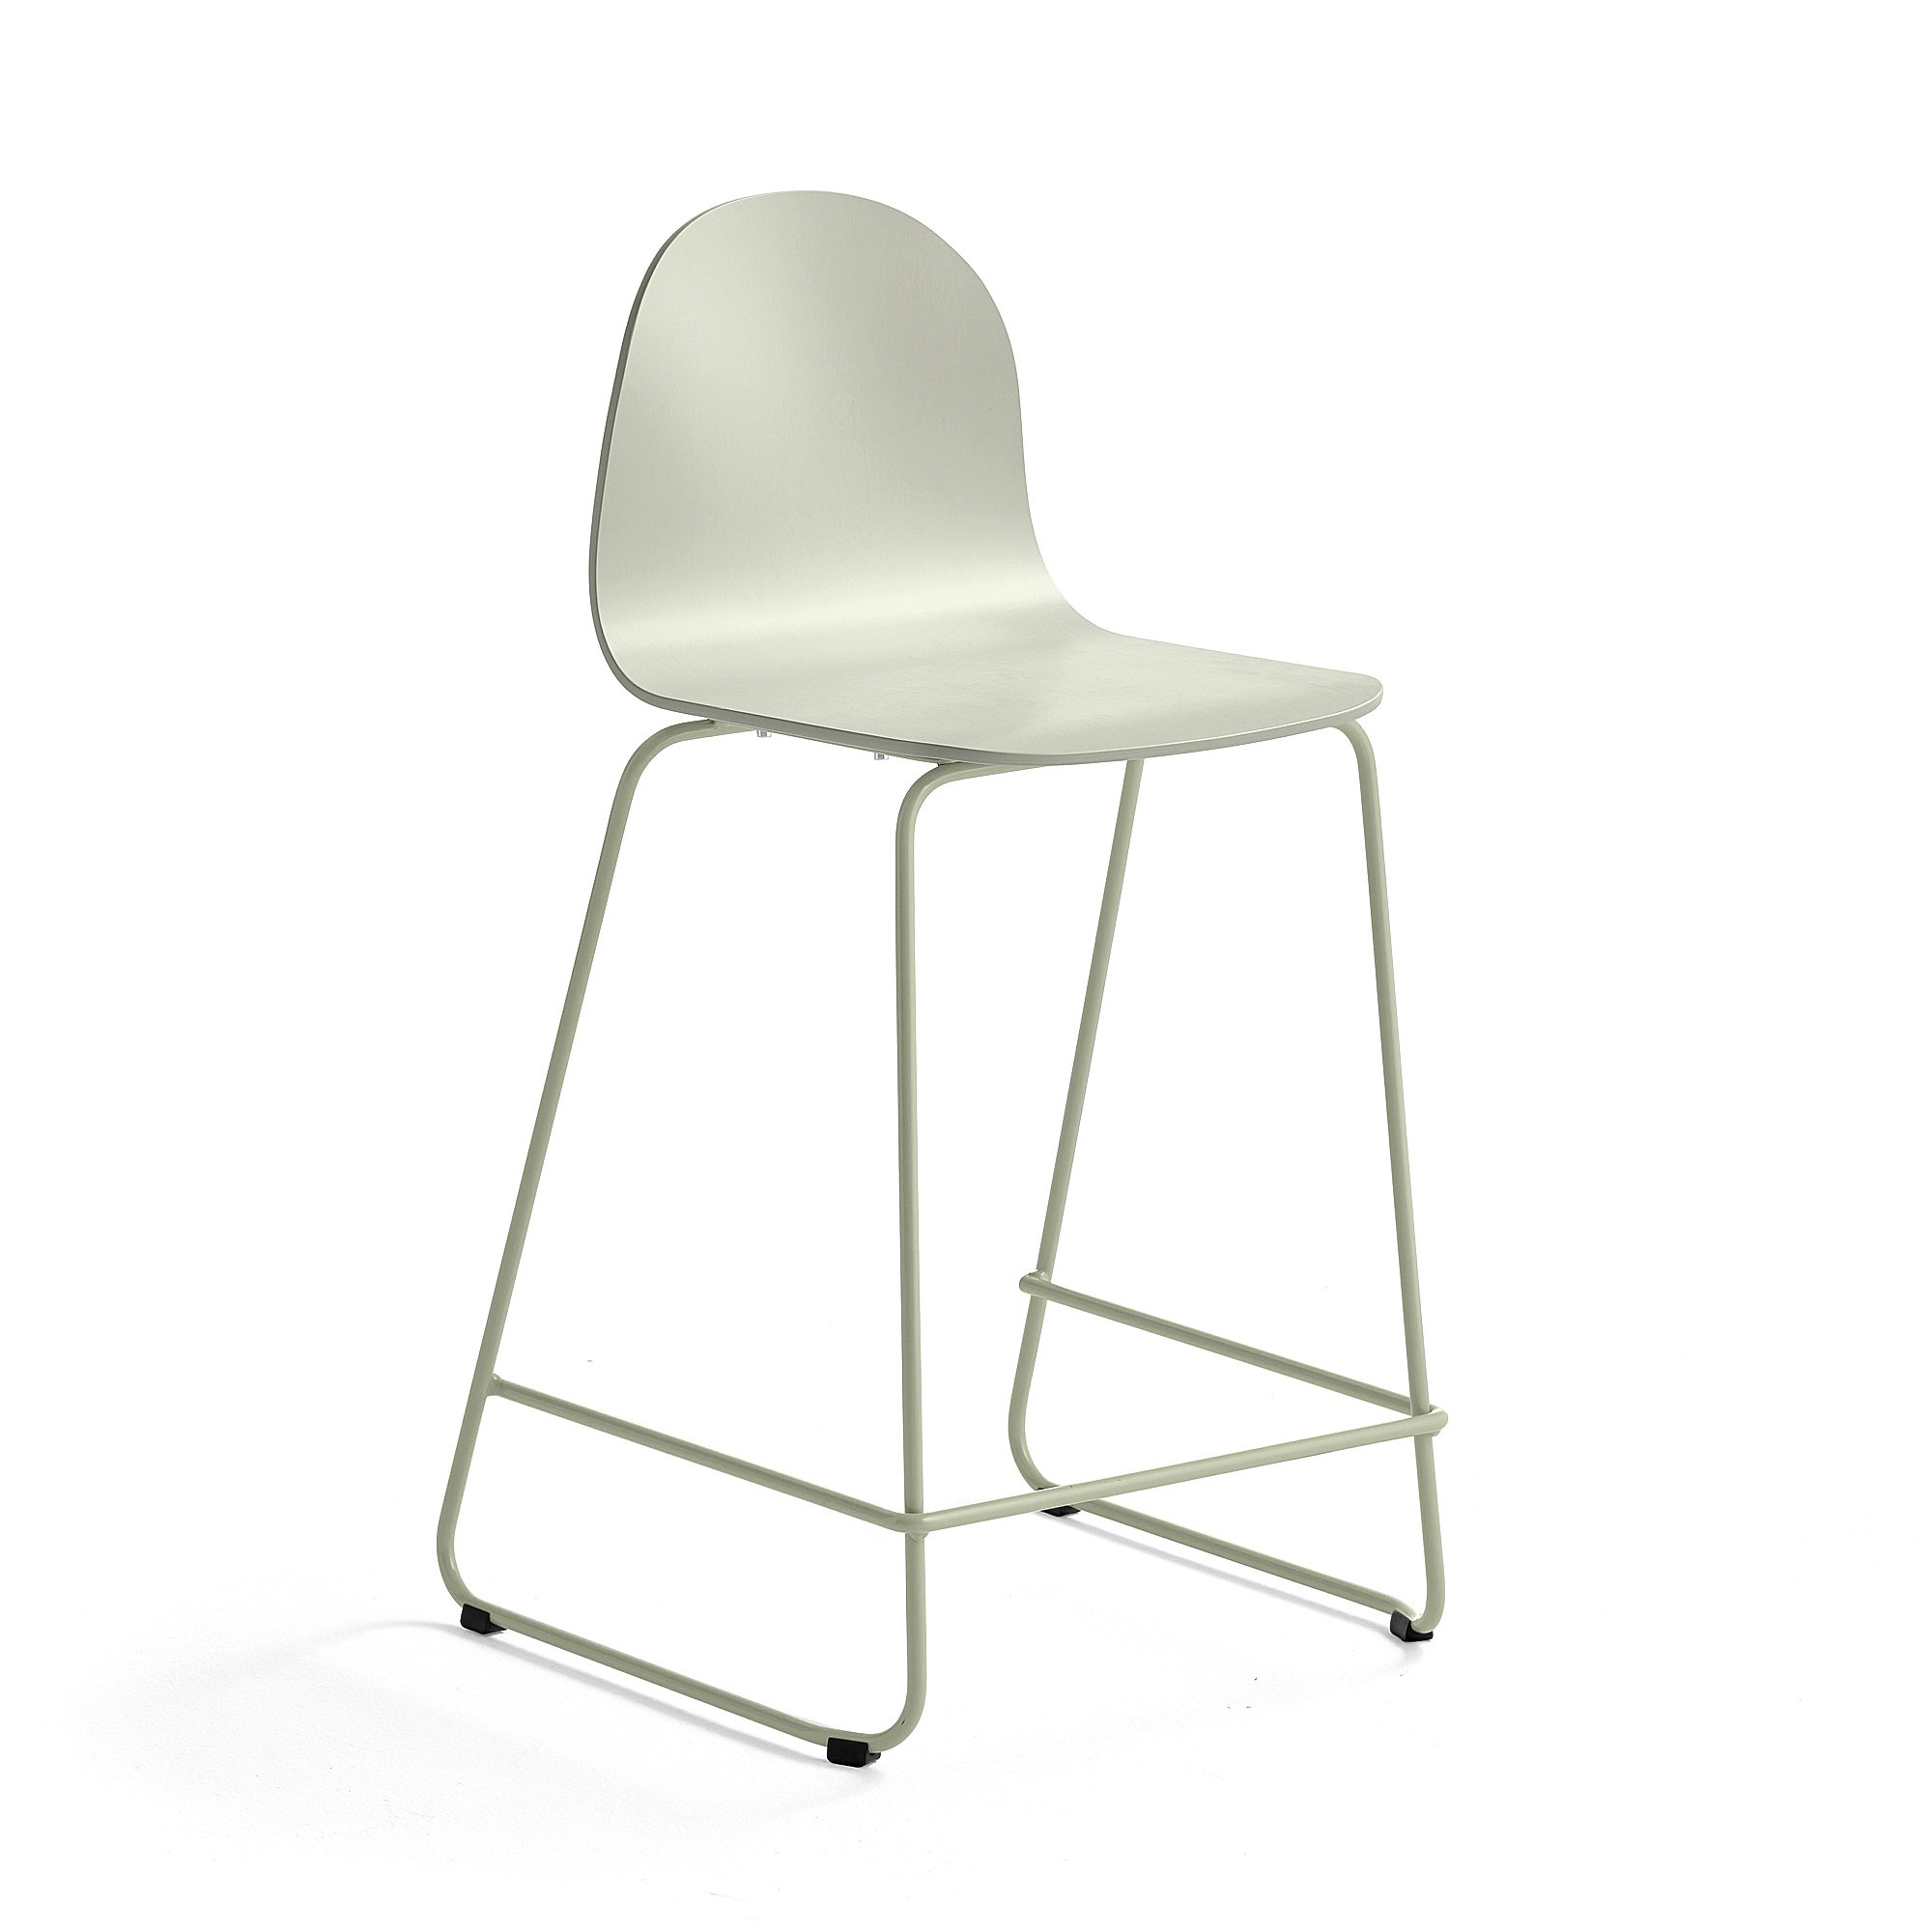 E-shop Barová stolička GANDER, s klzákmi, výška sedu 630 mm, lakovaná, zelenošedá